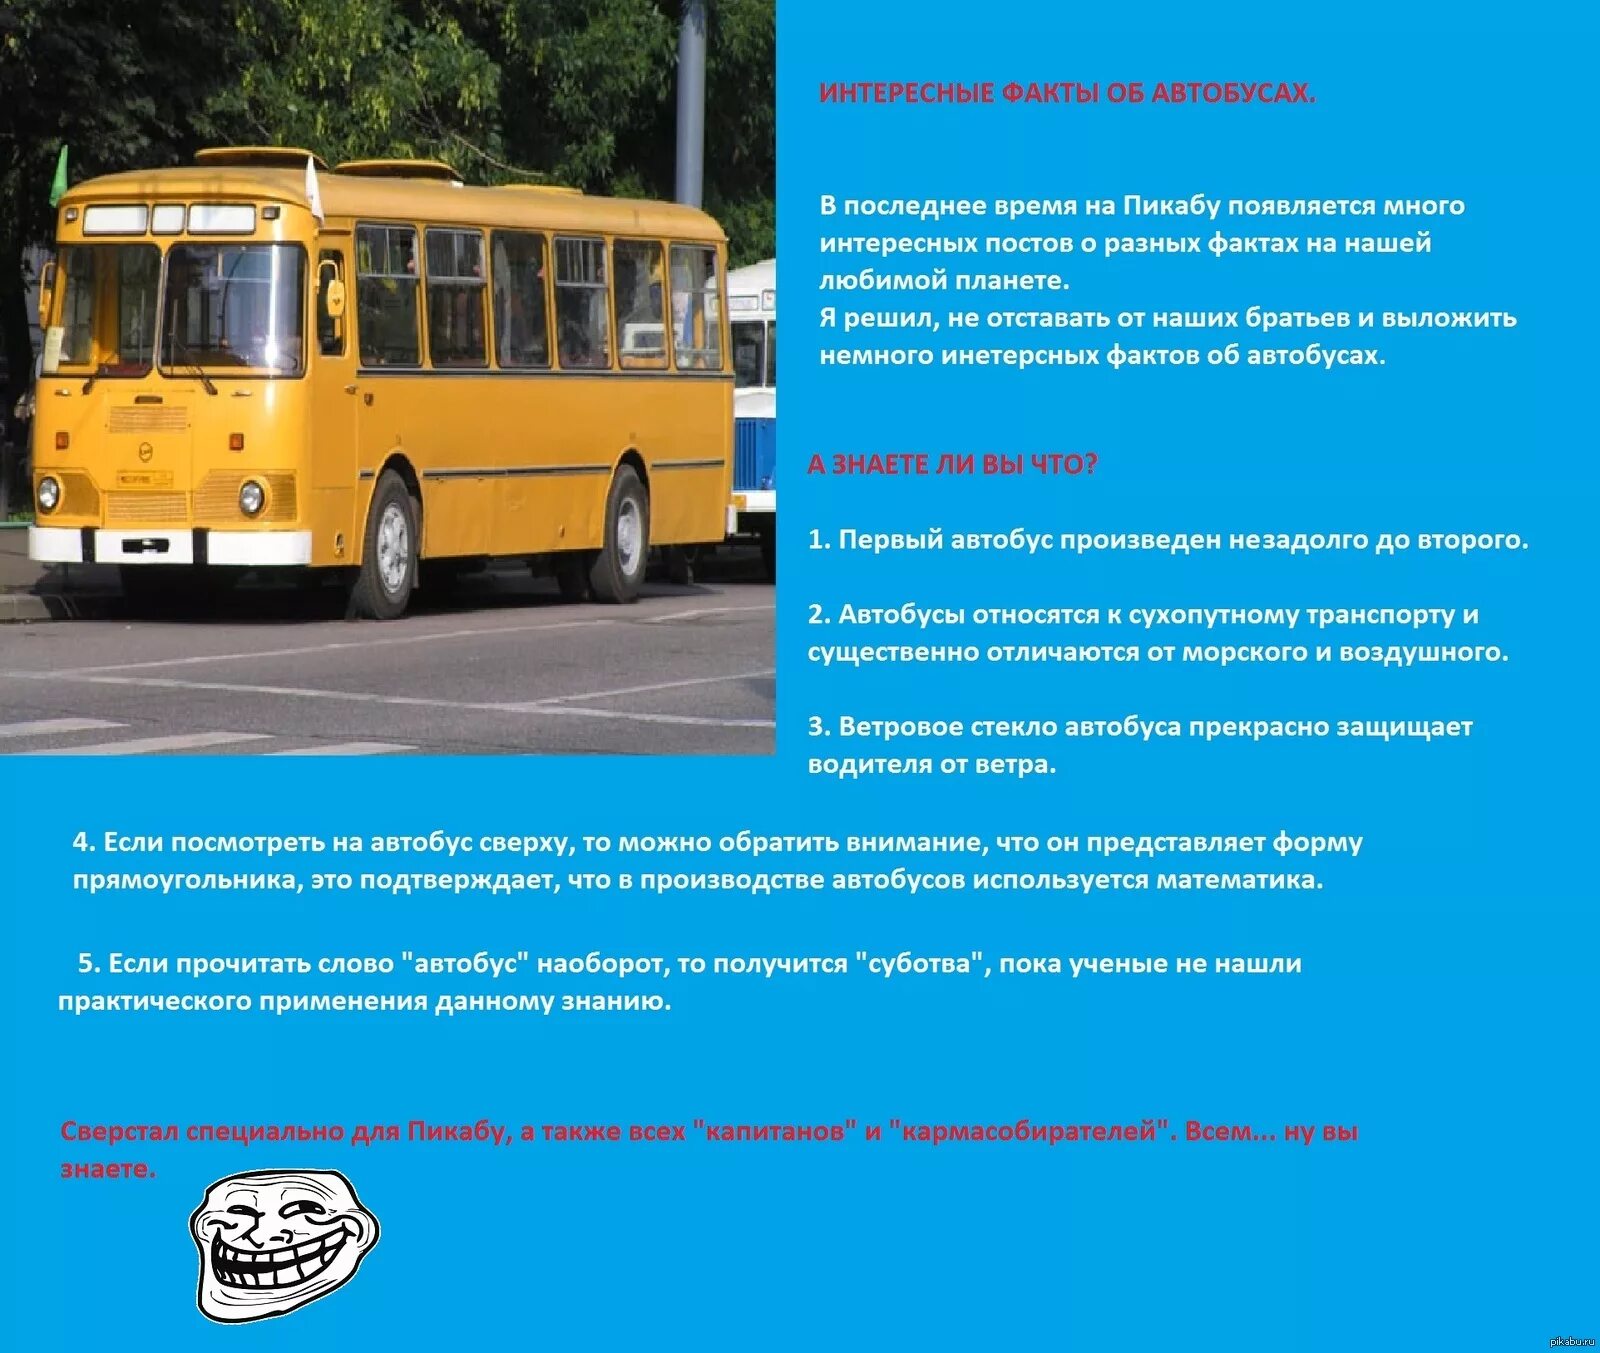 Транспорт время маршрутки. Интересные факты об автобусе для детей. Интересная информация про транспорт. Проект автобус. Факты про автобус.